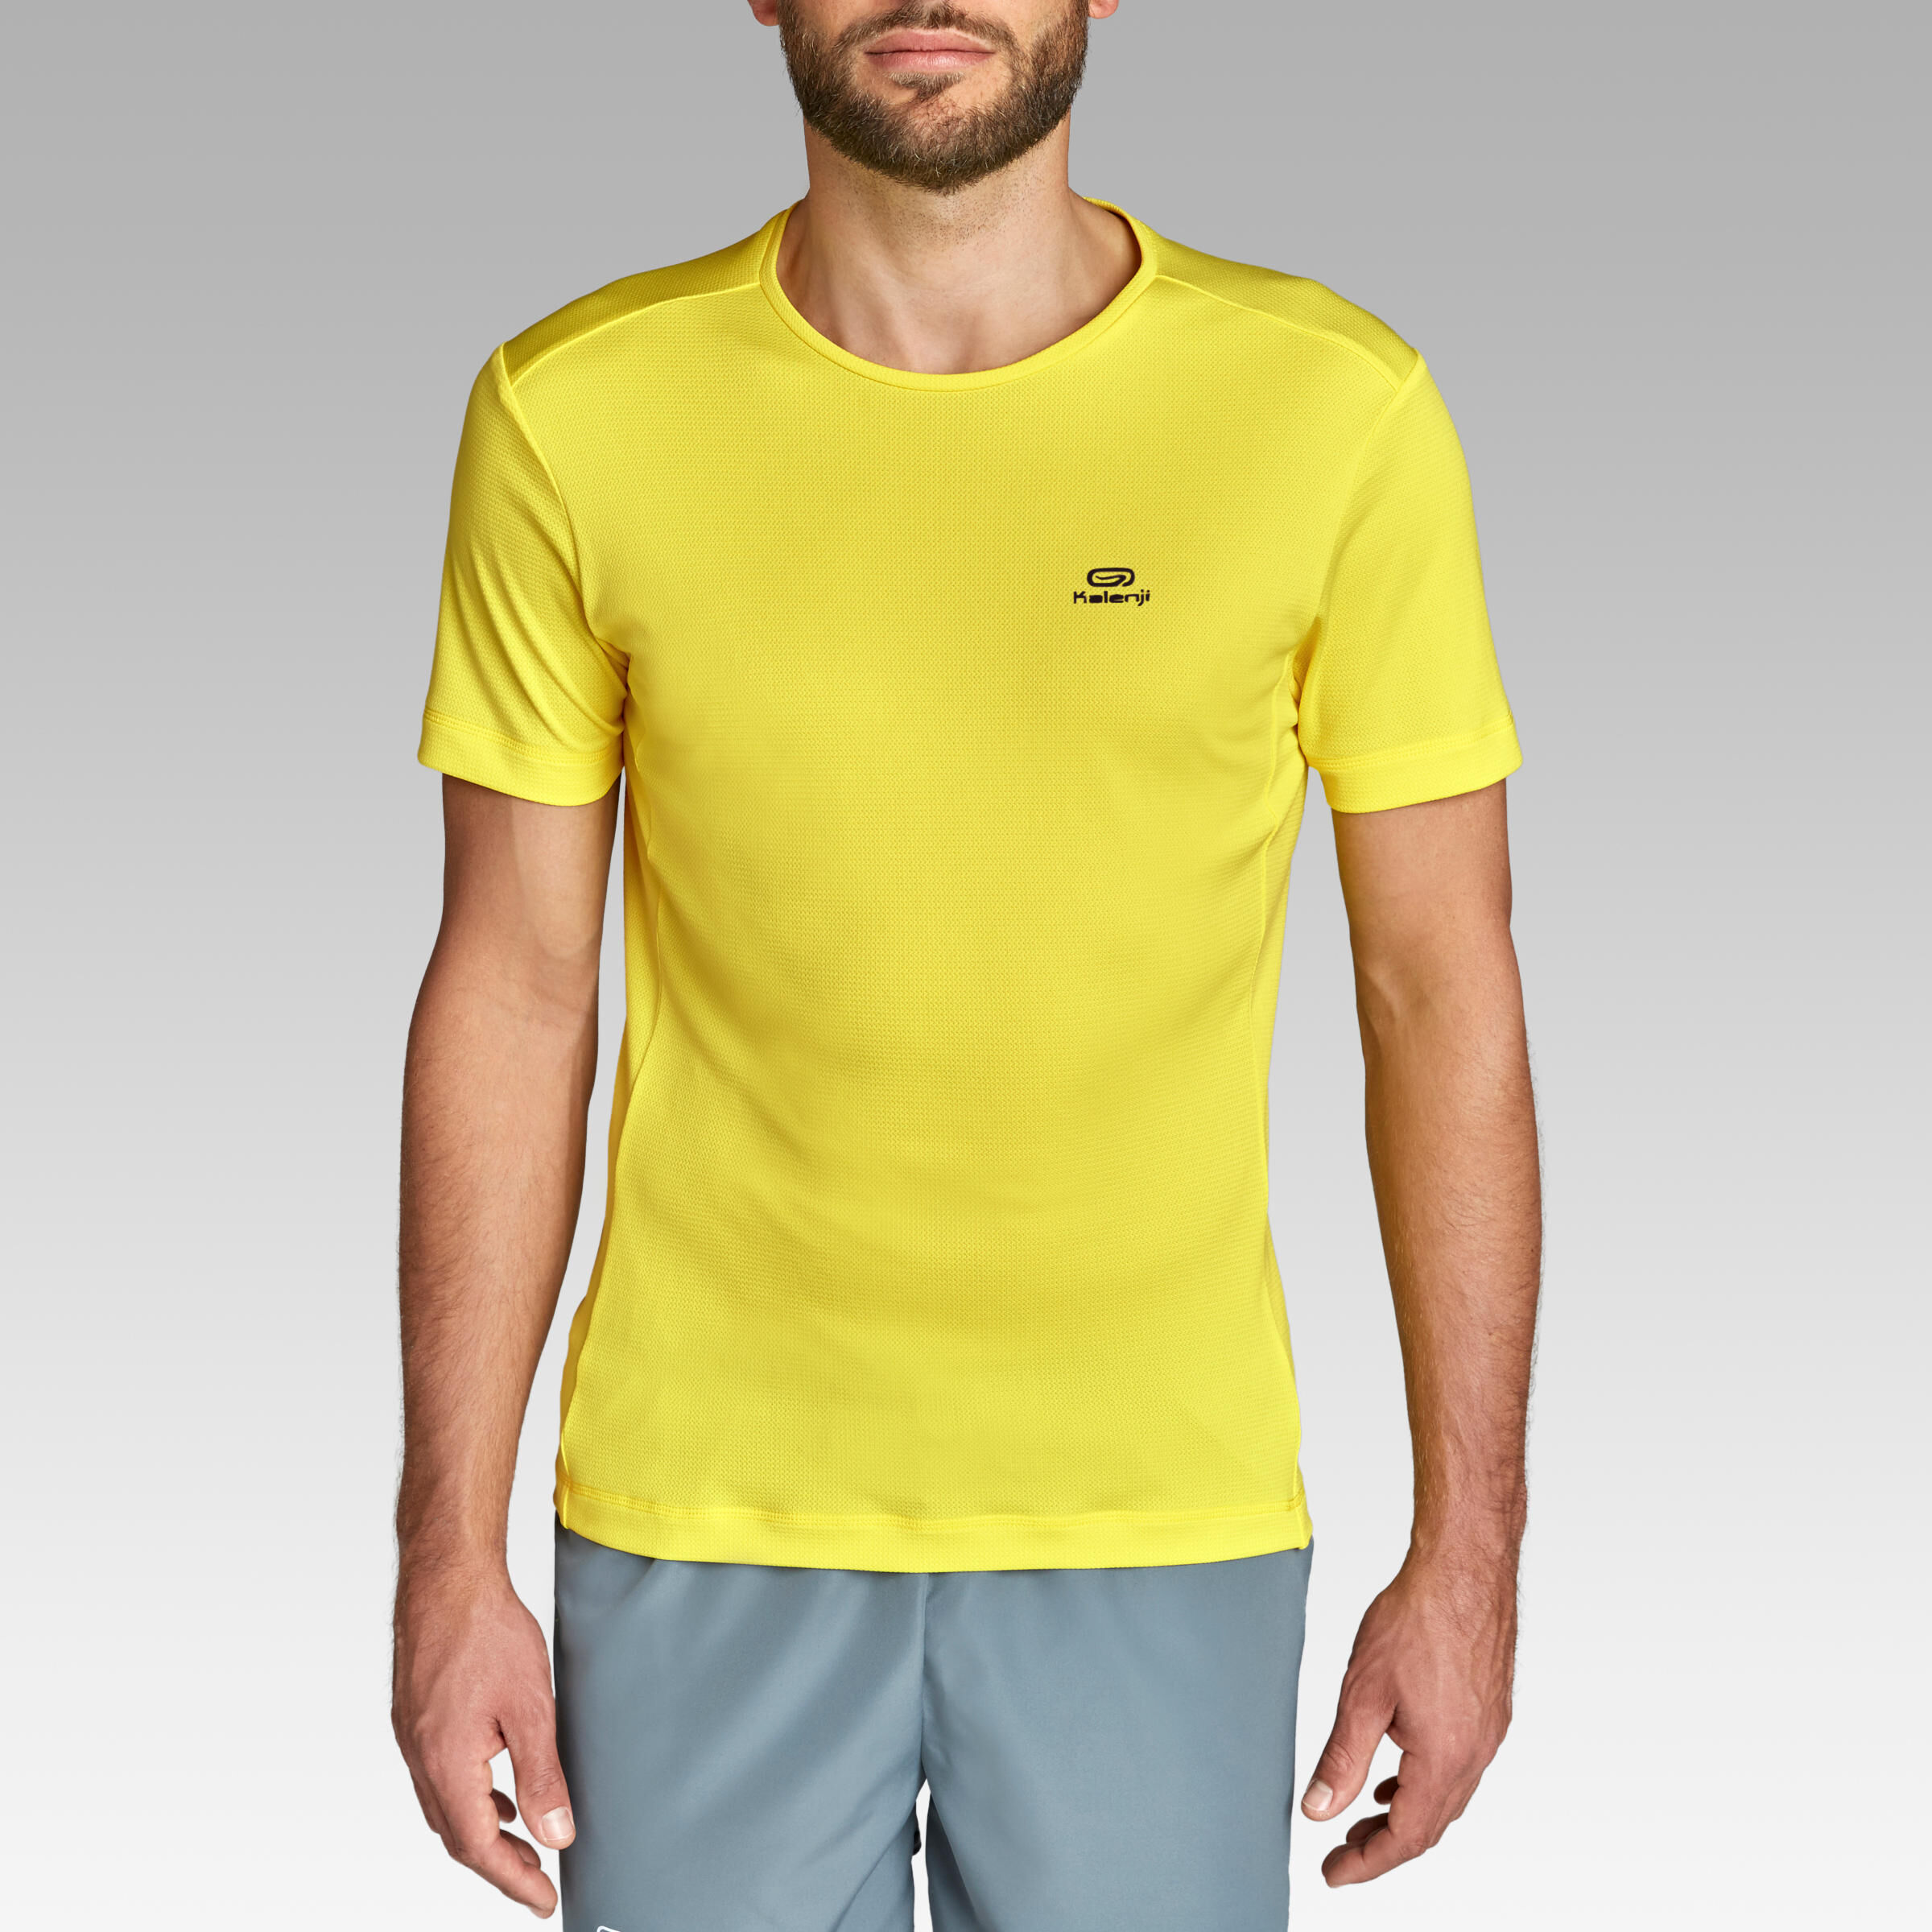 KALENJI Dry Men's Breathable Running T-Shirt - Lemon Yellow